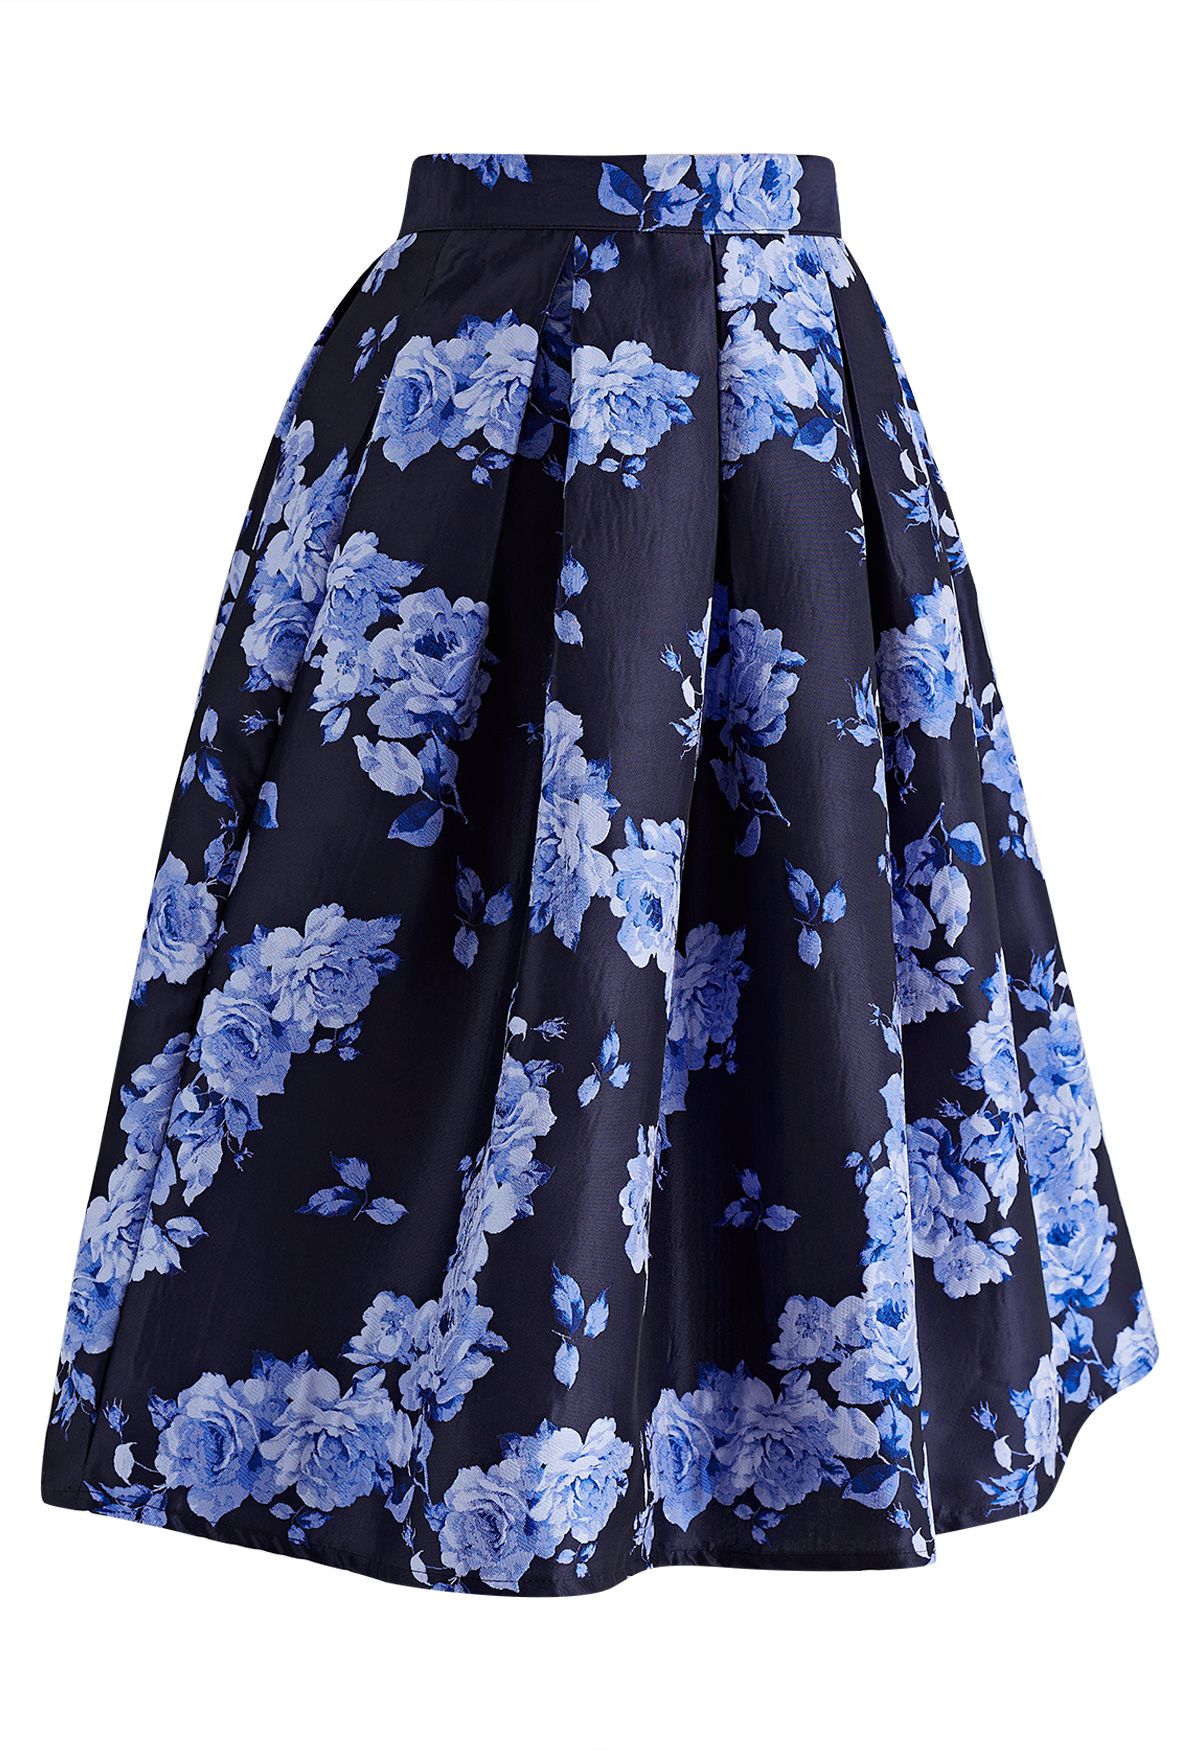 Jupe mi-longue plissée en jacquard pivoine bleue Midnight Blossom